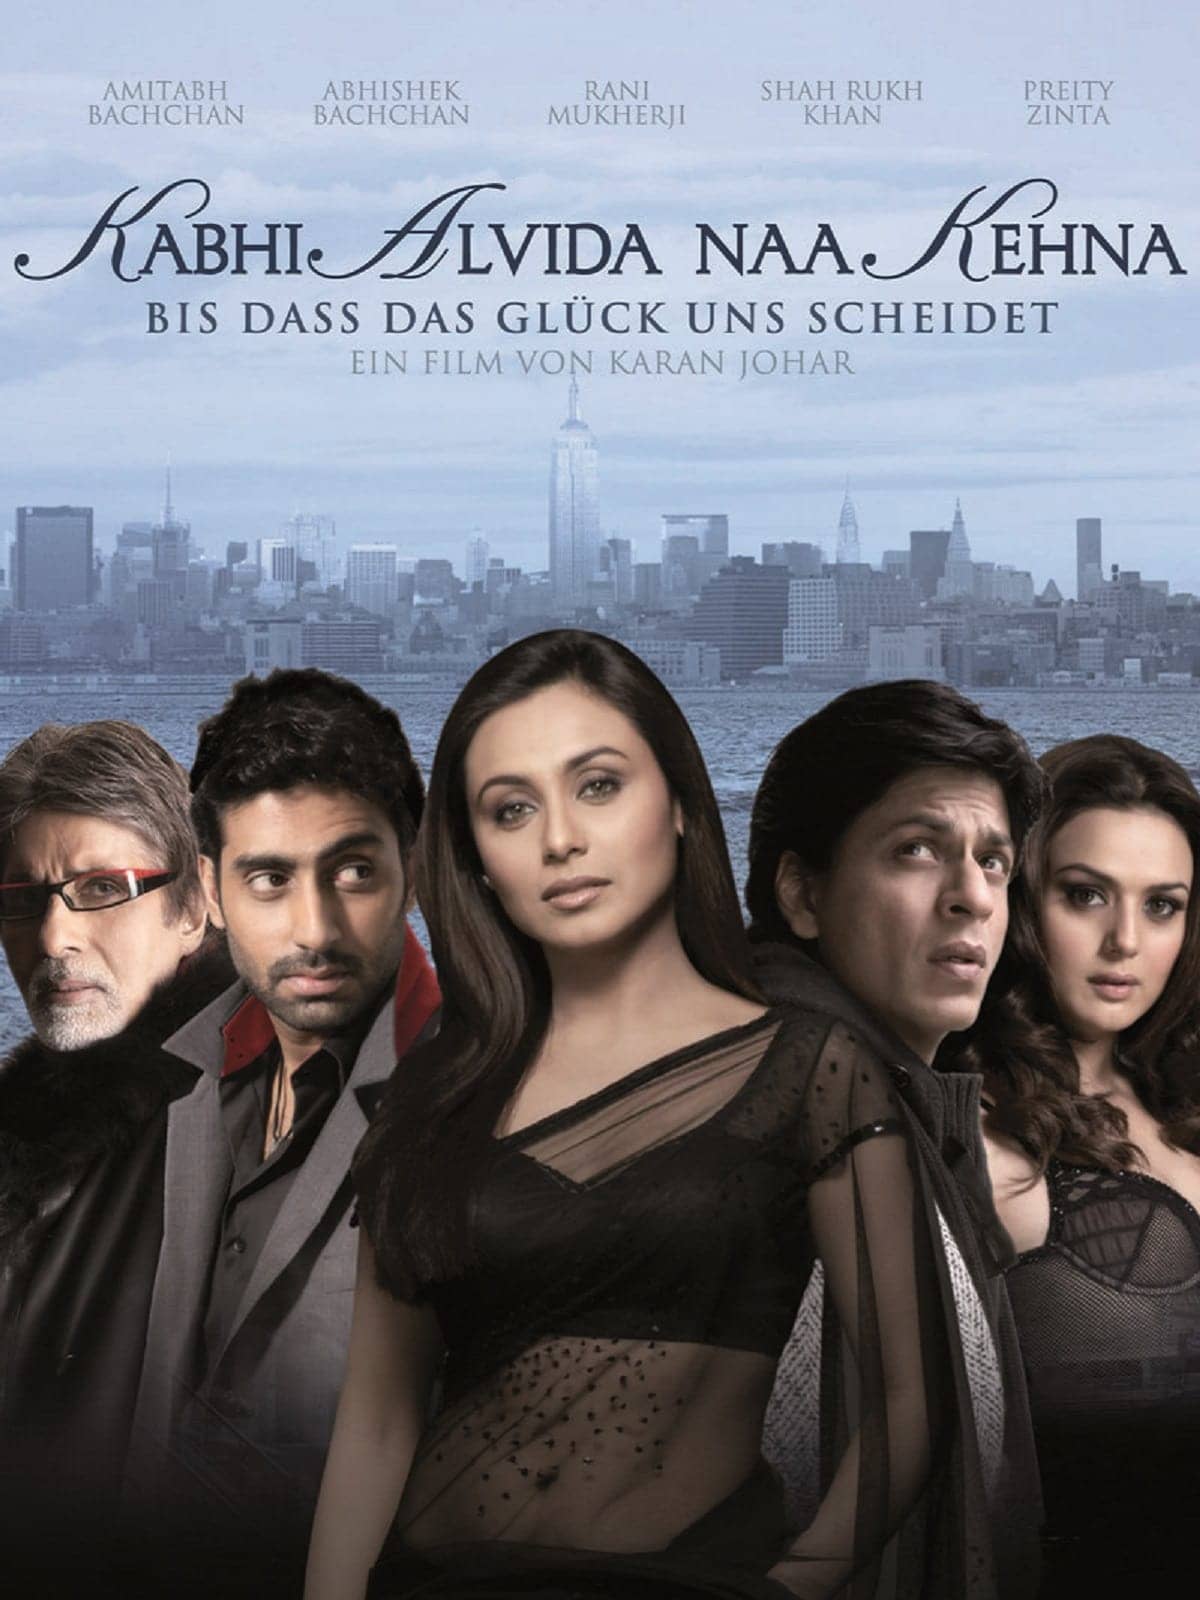 Kabhi Alvida Naa Kehna (2006) Hindi Full Movie BluRay ESub